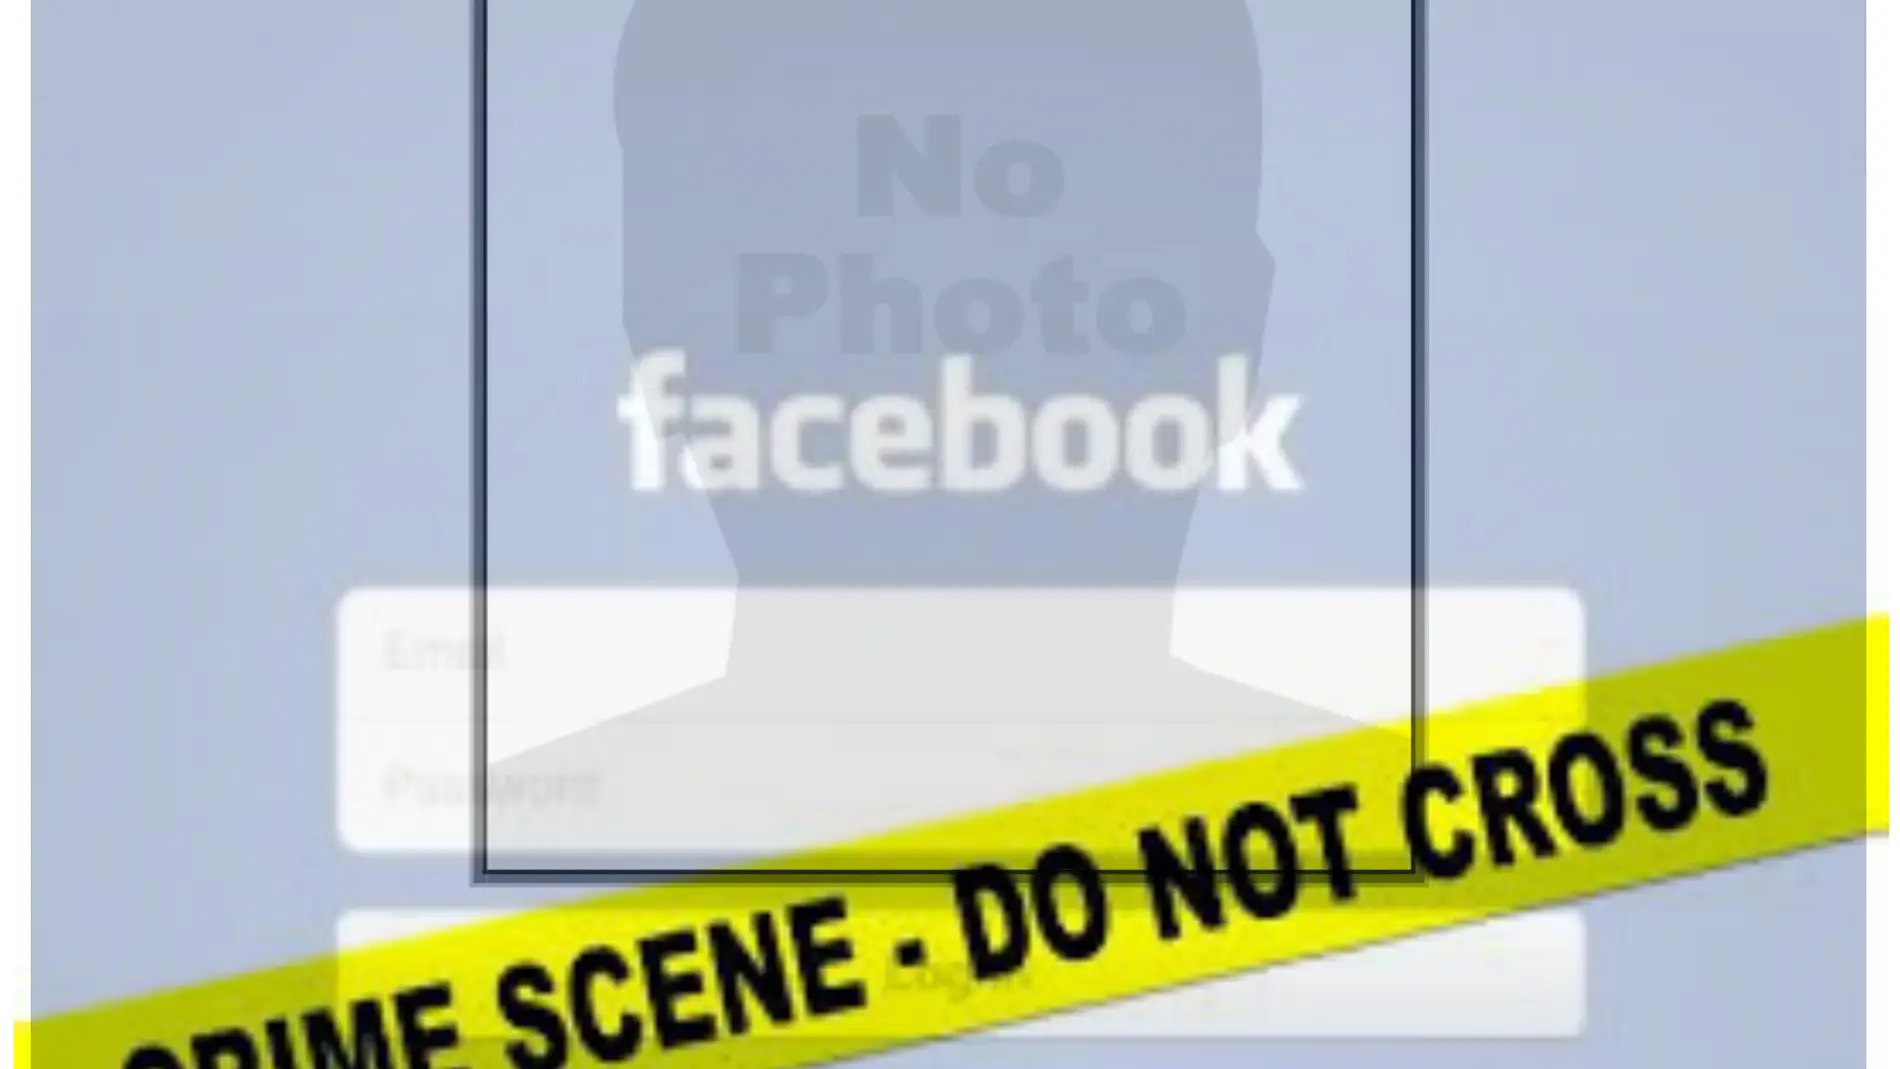 Modificar contenido Facebook por desaparición